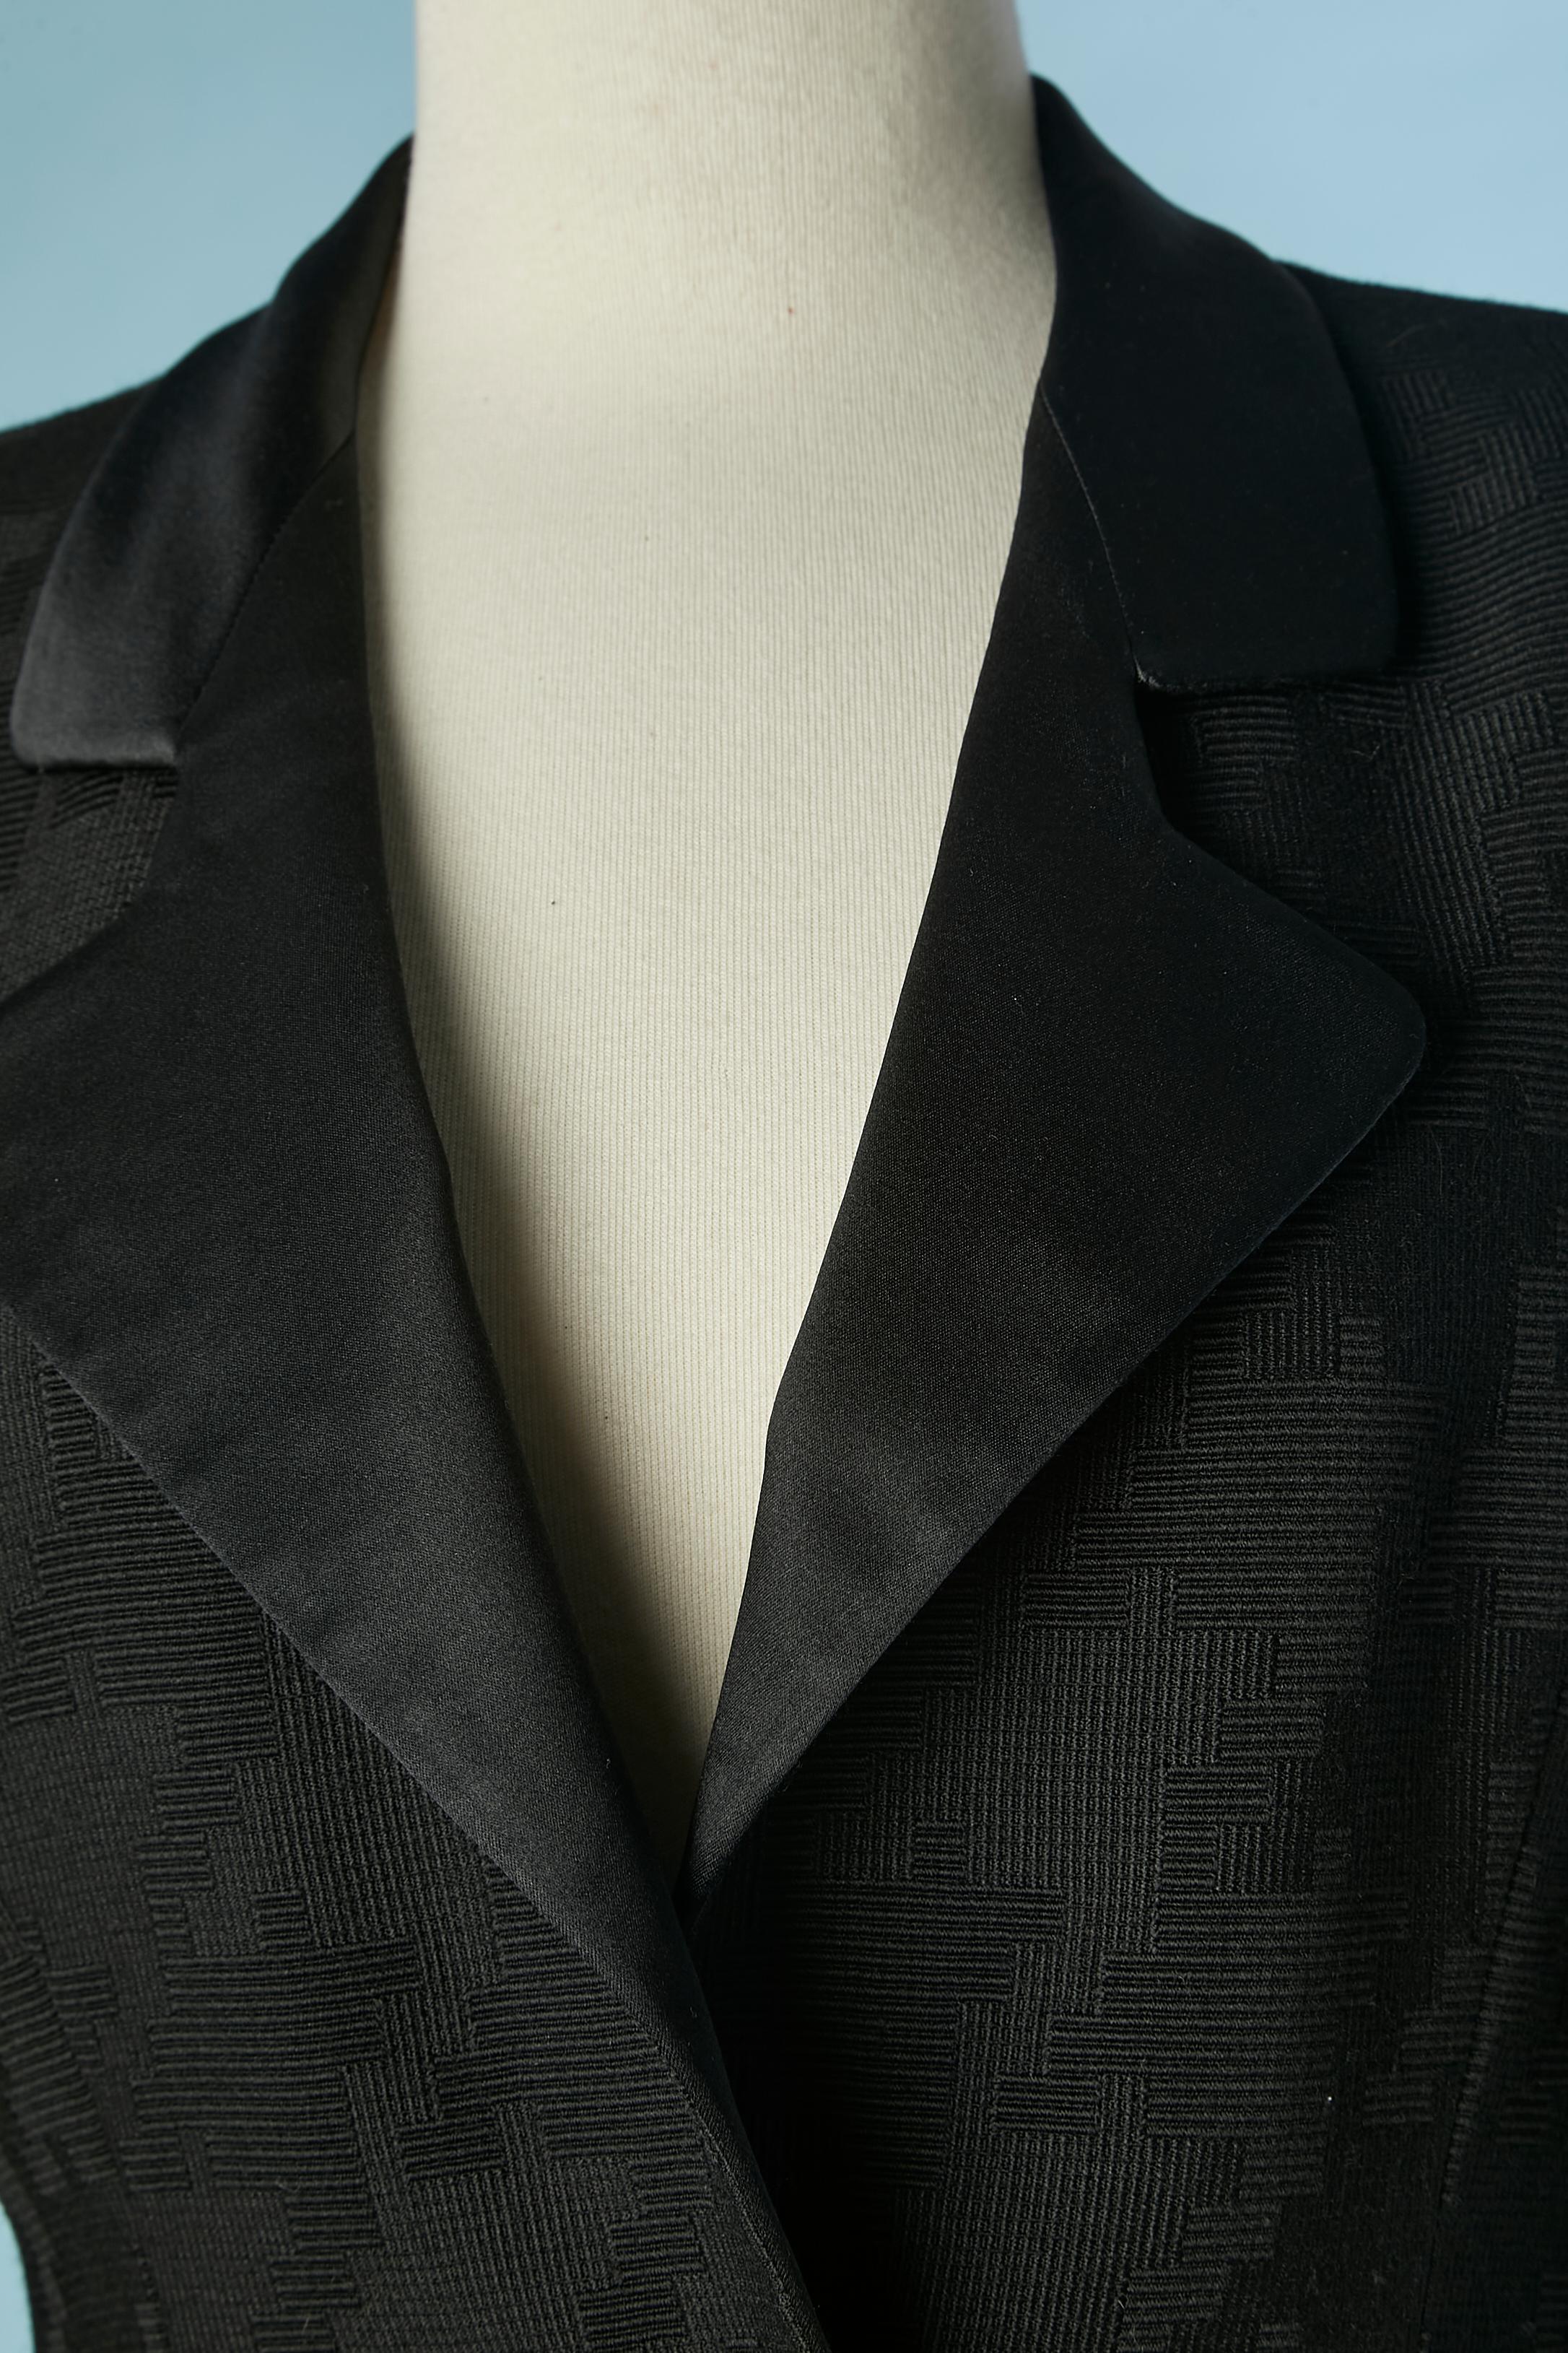 Schwarzer Rock-Anzug mit grafischem Muster. Kein Stoff Tag Zusammensetzung aber wahrscheinlich Wolle und Futter ist wahrscheinlich in Satin. Satin-Kragen. Schulter-Pad. Knöpfe mit Stoffbezug in der vorderen Mitte.
Größe M (Jacke) und S (Rock) 